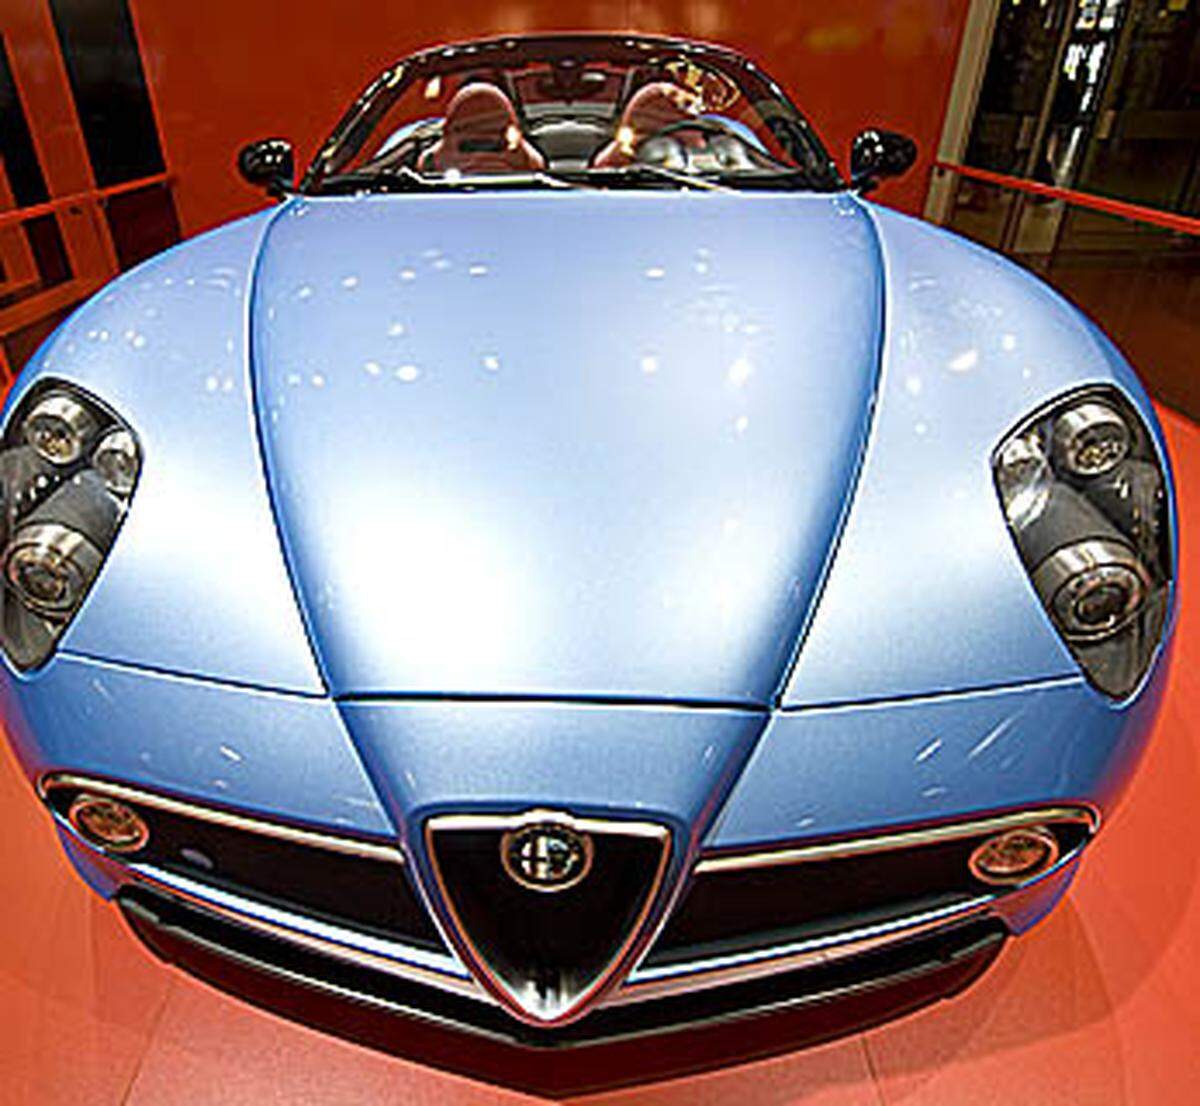 Die Autos des Design-bewussten italienischen Herstellers Alfa Romeo verlieren 56,63 Prozent an Wert. Wobei es auch Ausreißer von Alfa gibt: Der C 8 etwa steigt sogar im Wert, da er nur in sehr kleiner Serie produziert wurde.